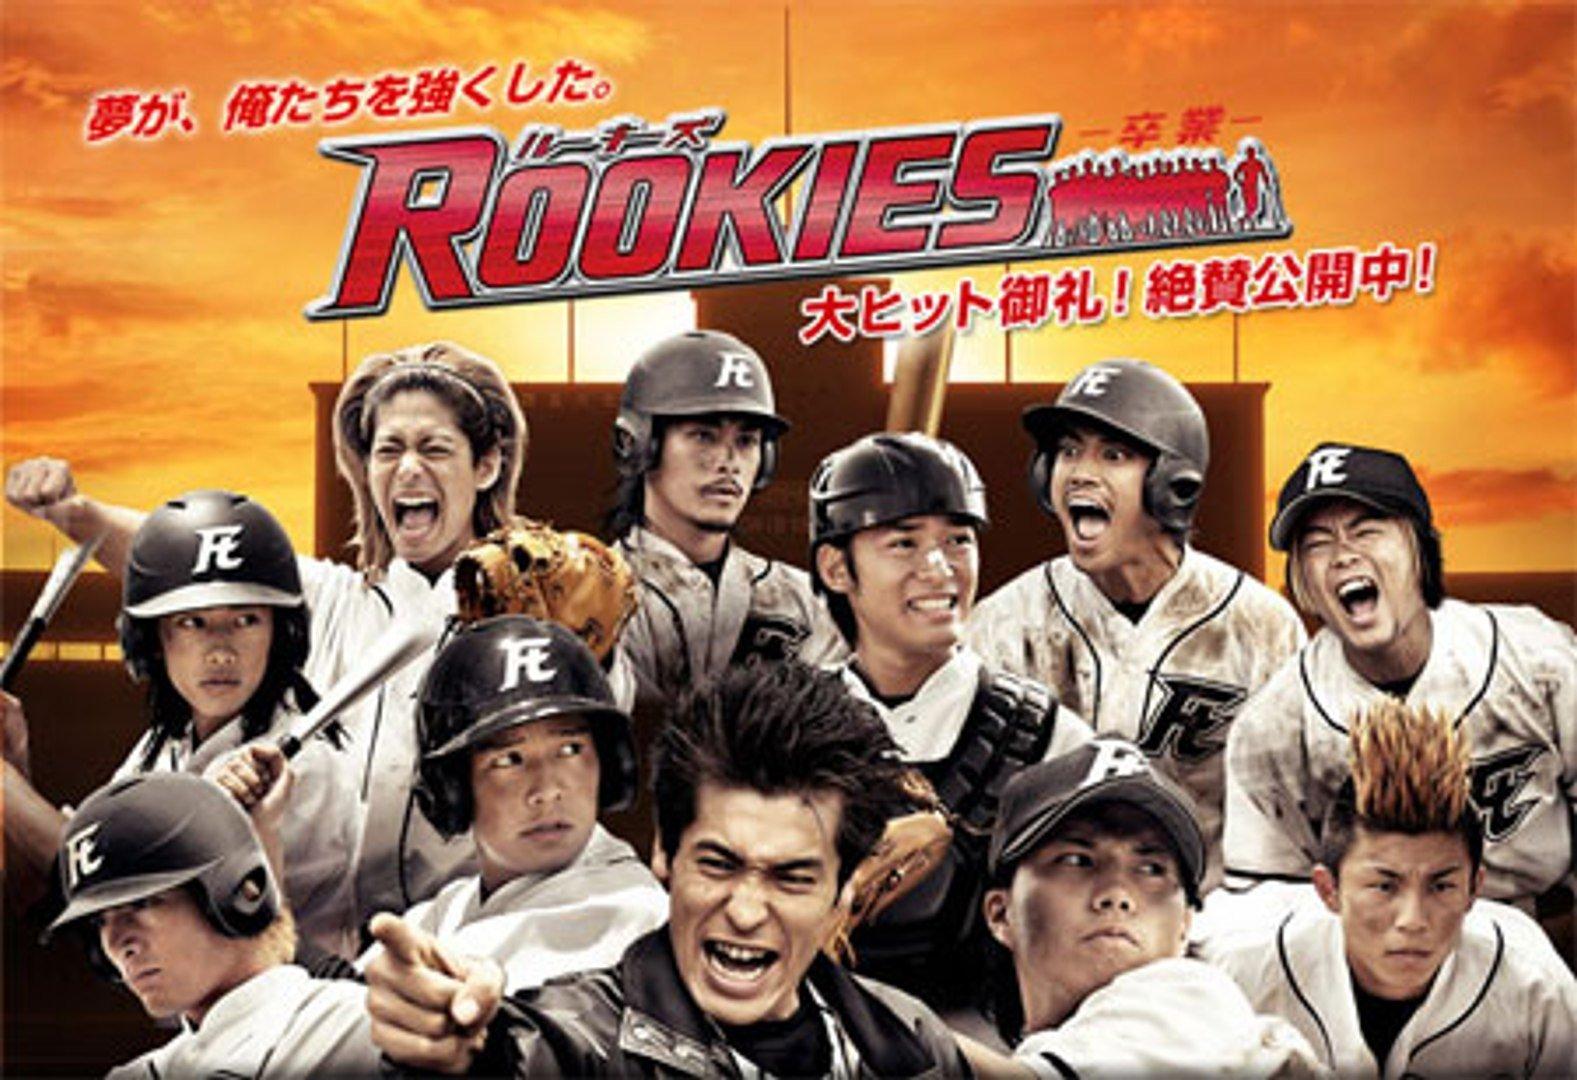 6 bộ phim Nhật Bản đề tài thể thao hay nhất theo dòng sự kiện Olympic Tokyo 2021